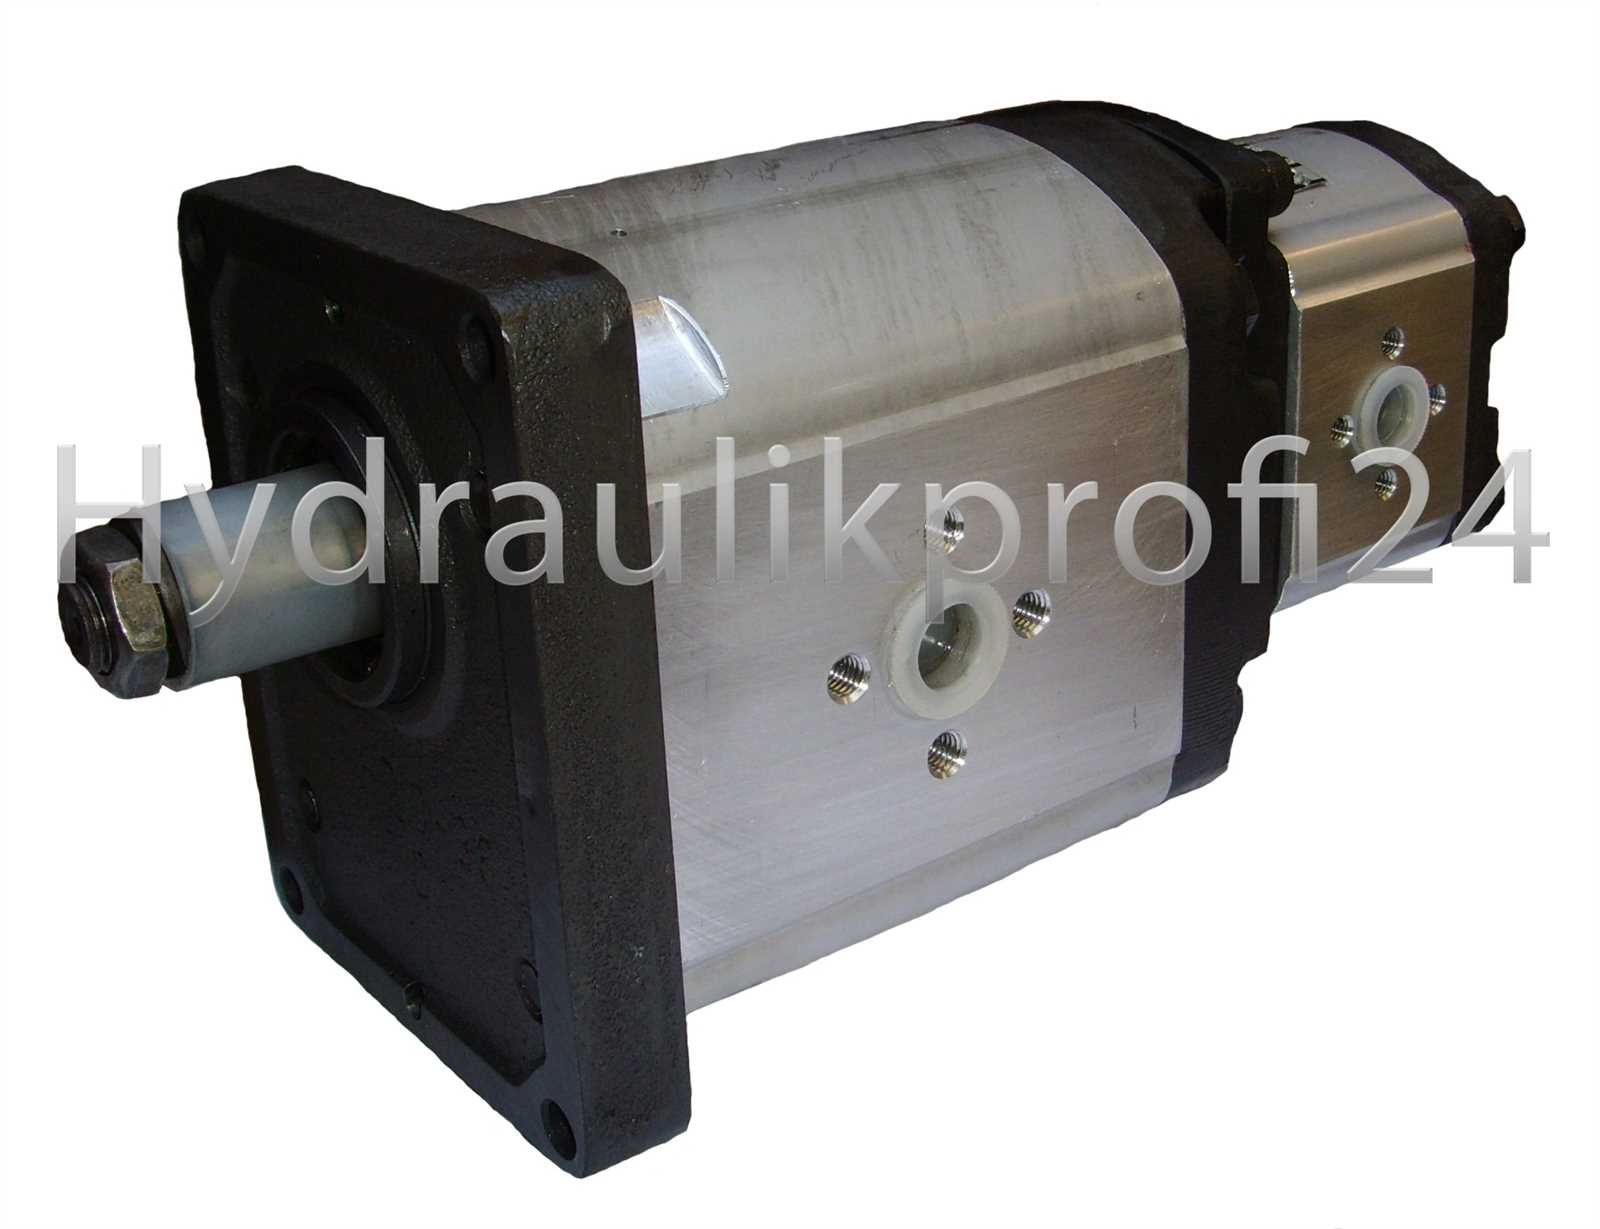 Hydraulikprofi24 - Tandempumpe Doppelpumpe Hydraulikpumpe m. Gußdeckel  BG3-38ccm+BG2-10ccm